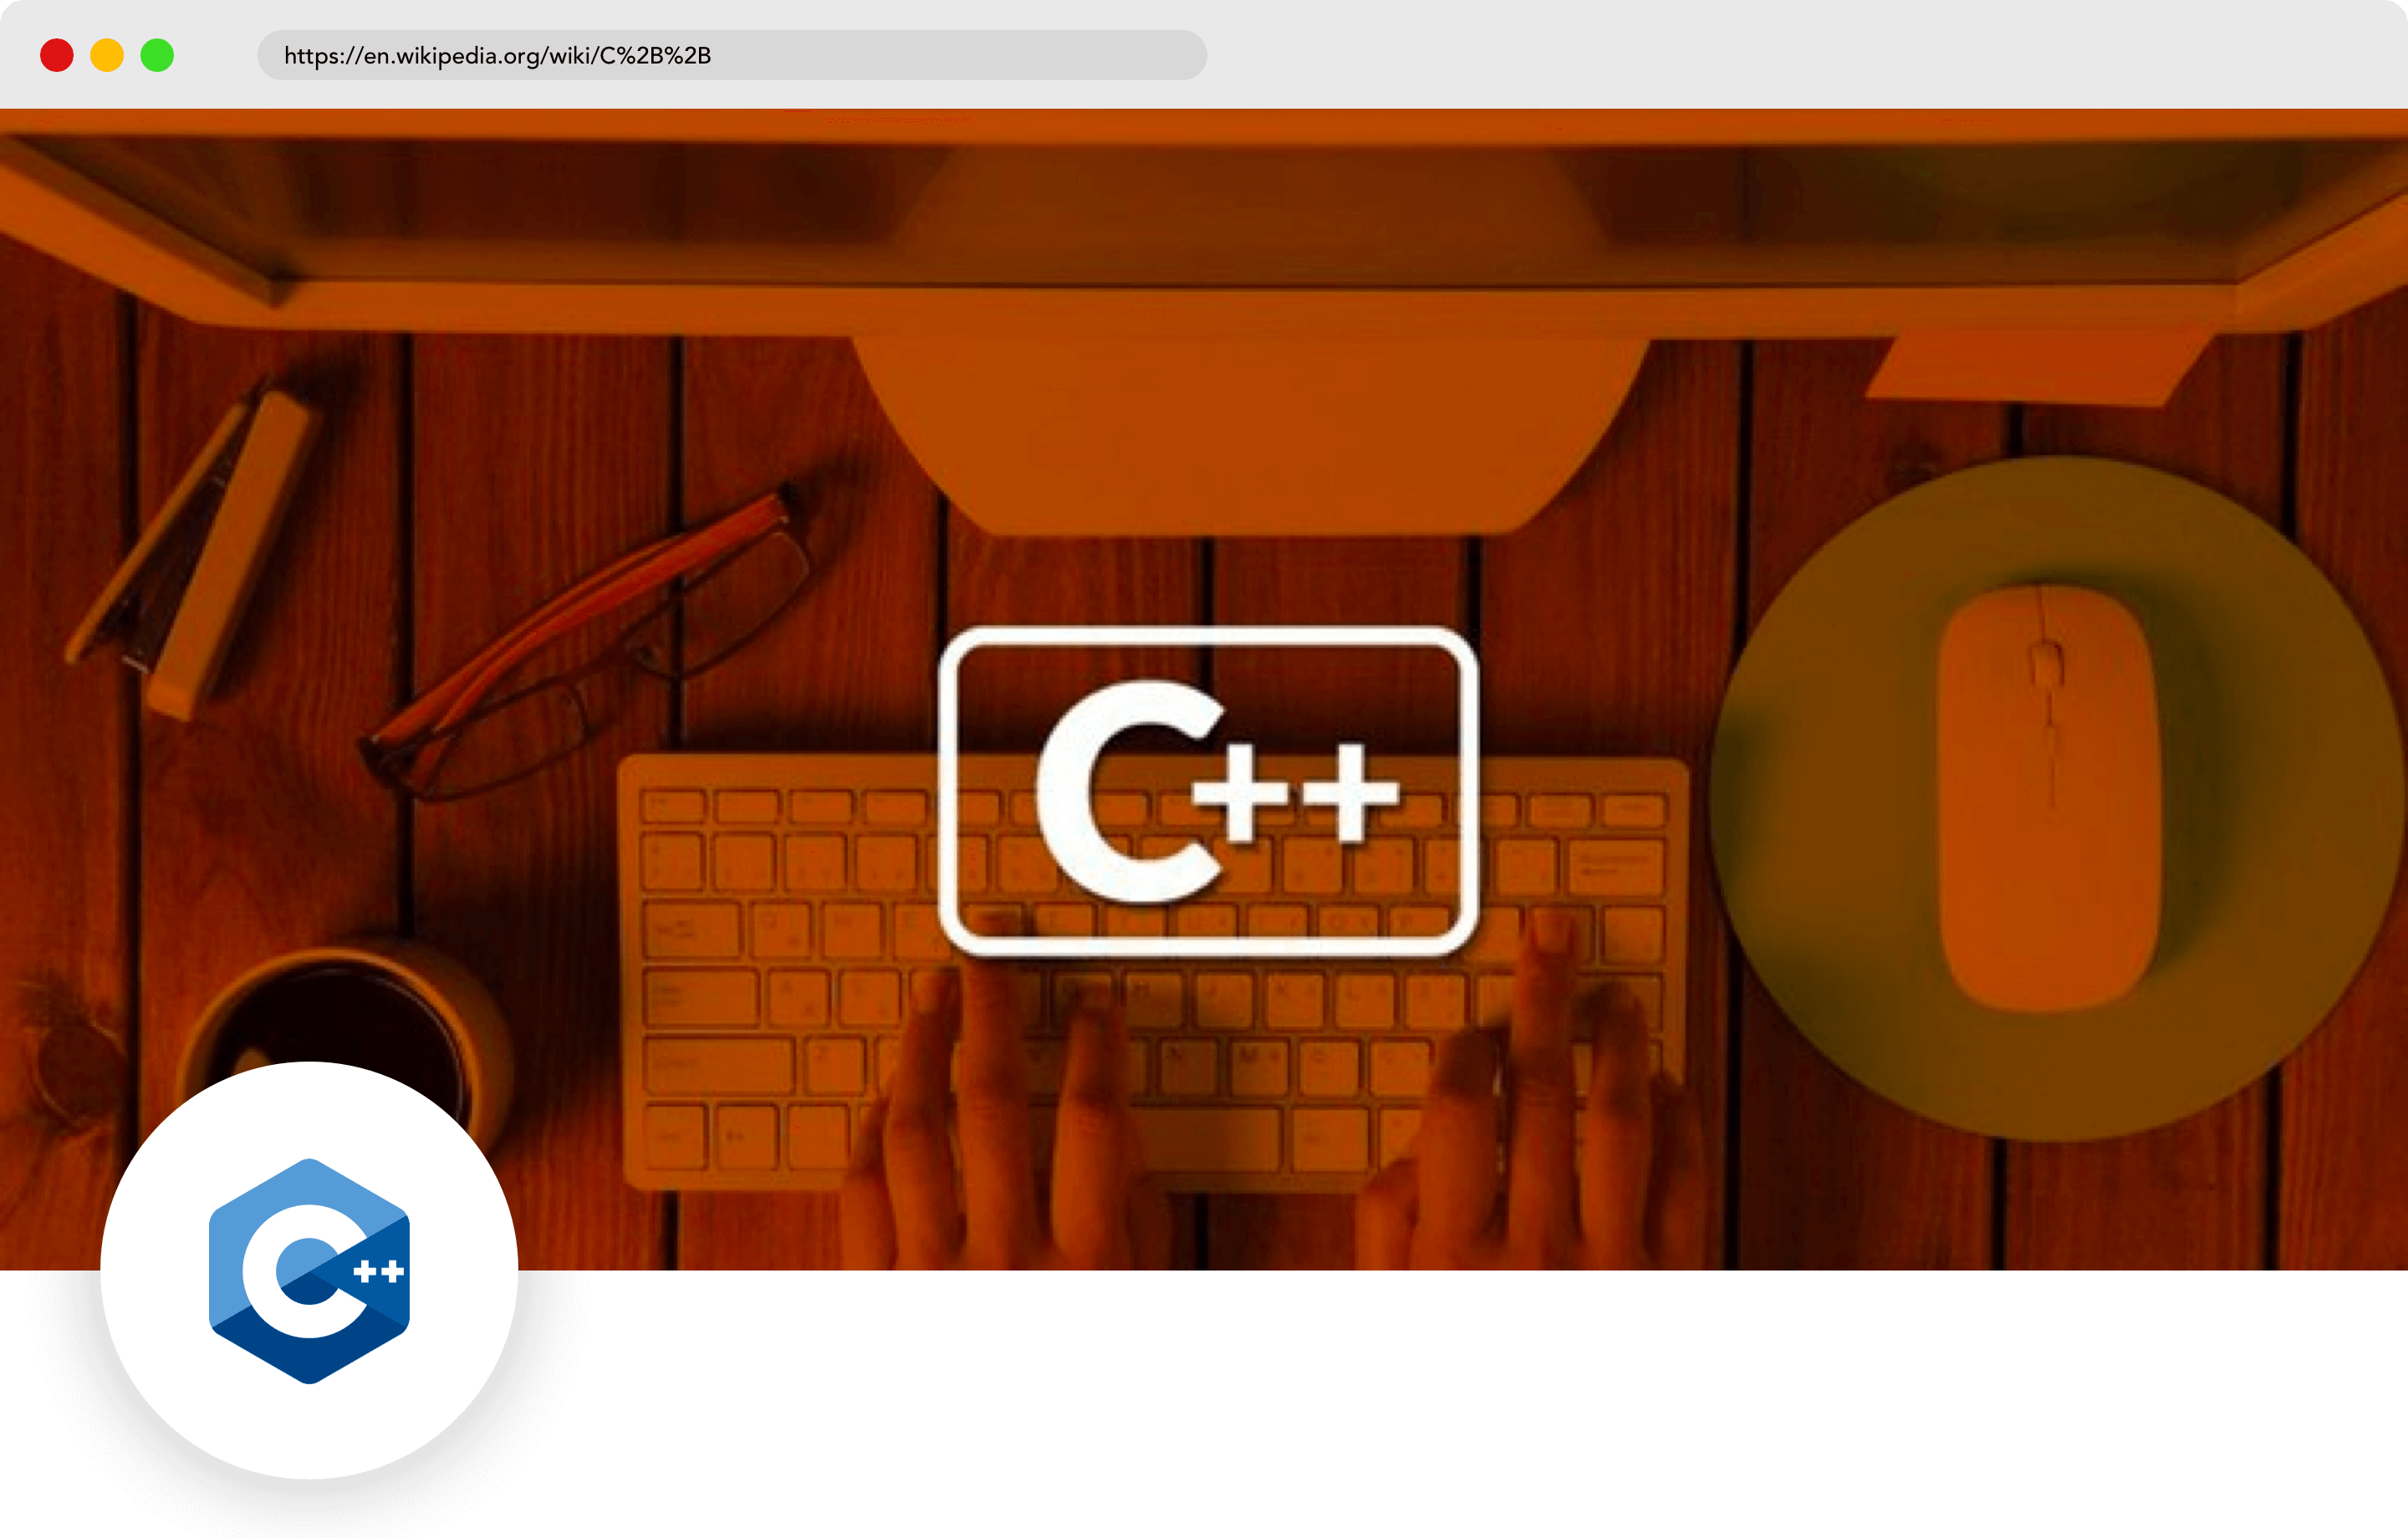 C++ mobile programming language